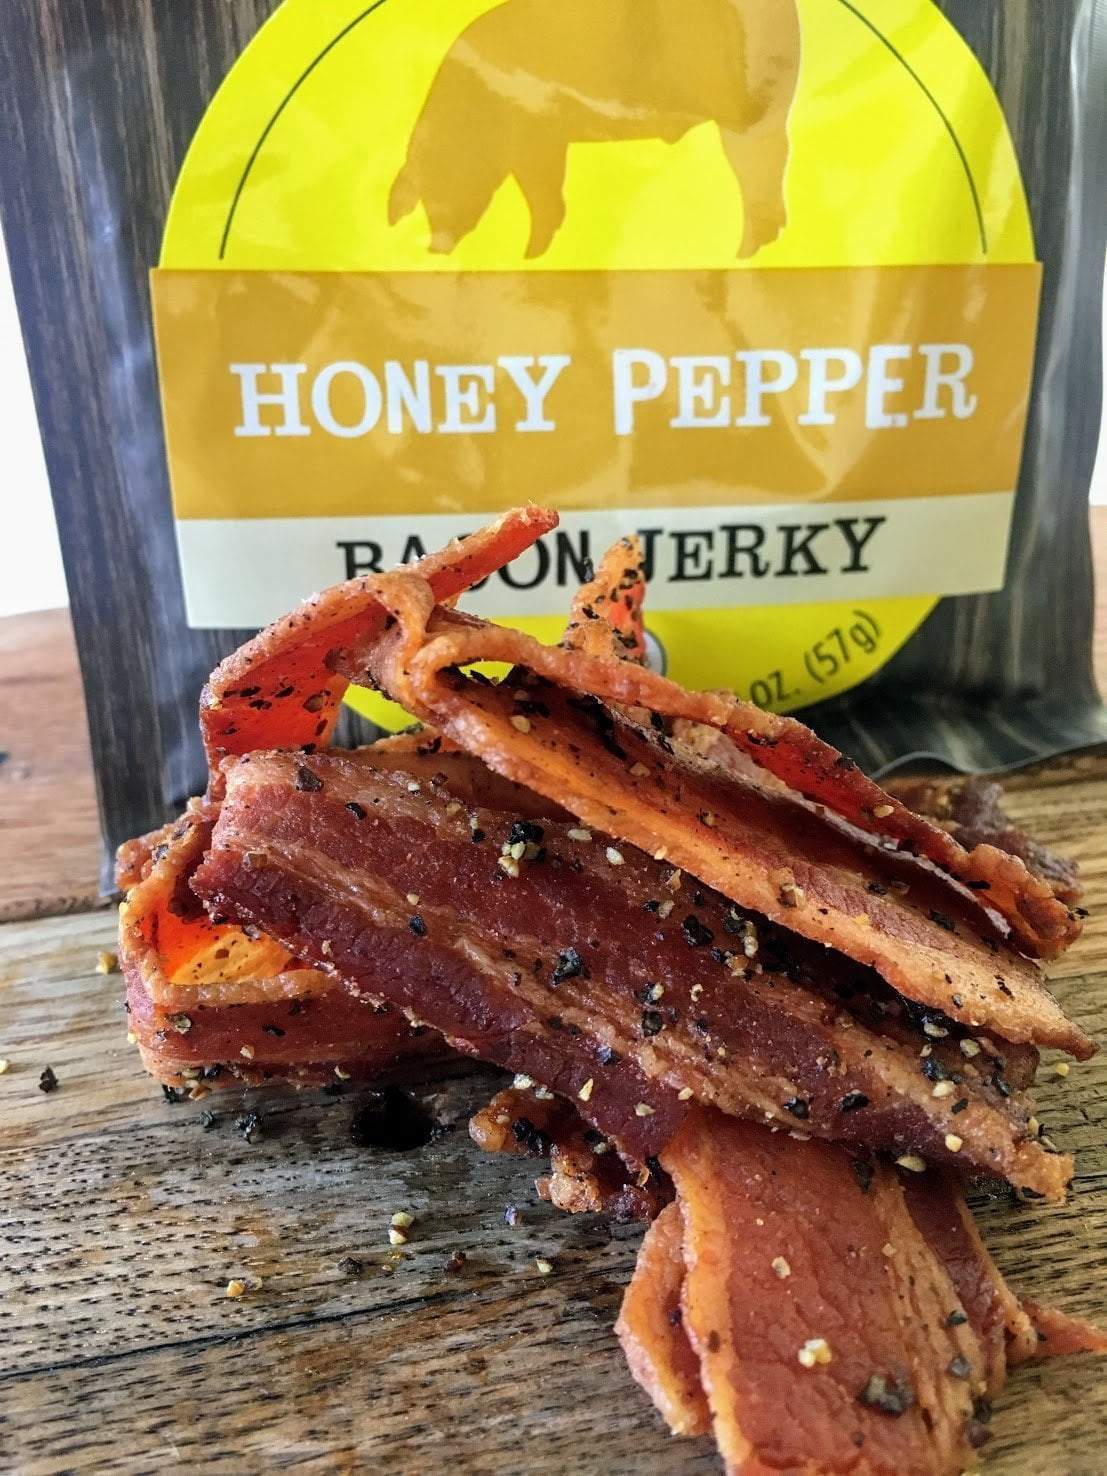 Bacon Jerky - Honey Pepper by Jerky.com